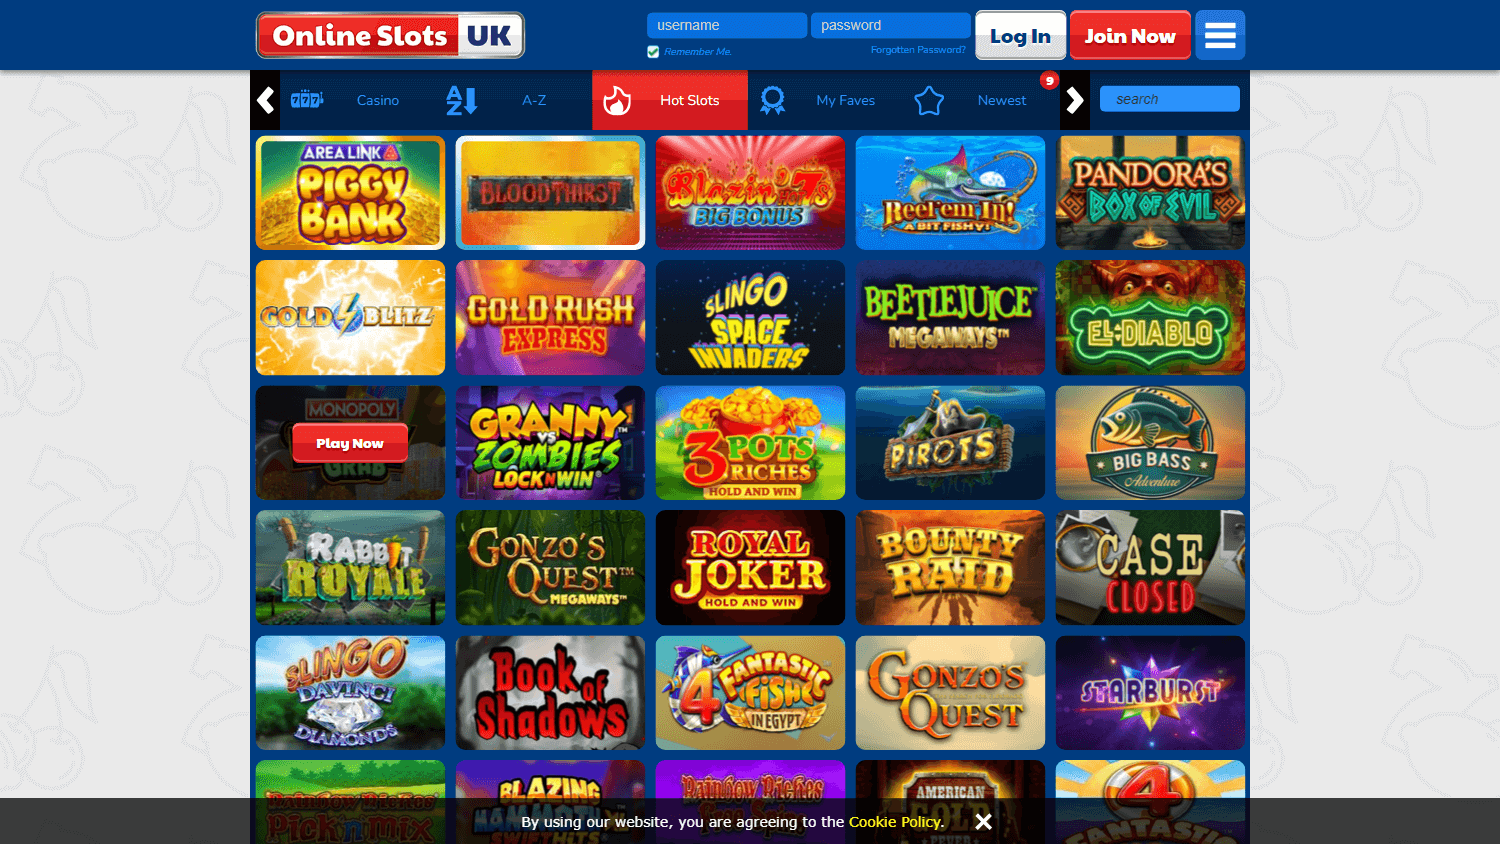 online_slots_uk_casino_game_gallery_desktop